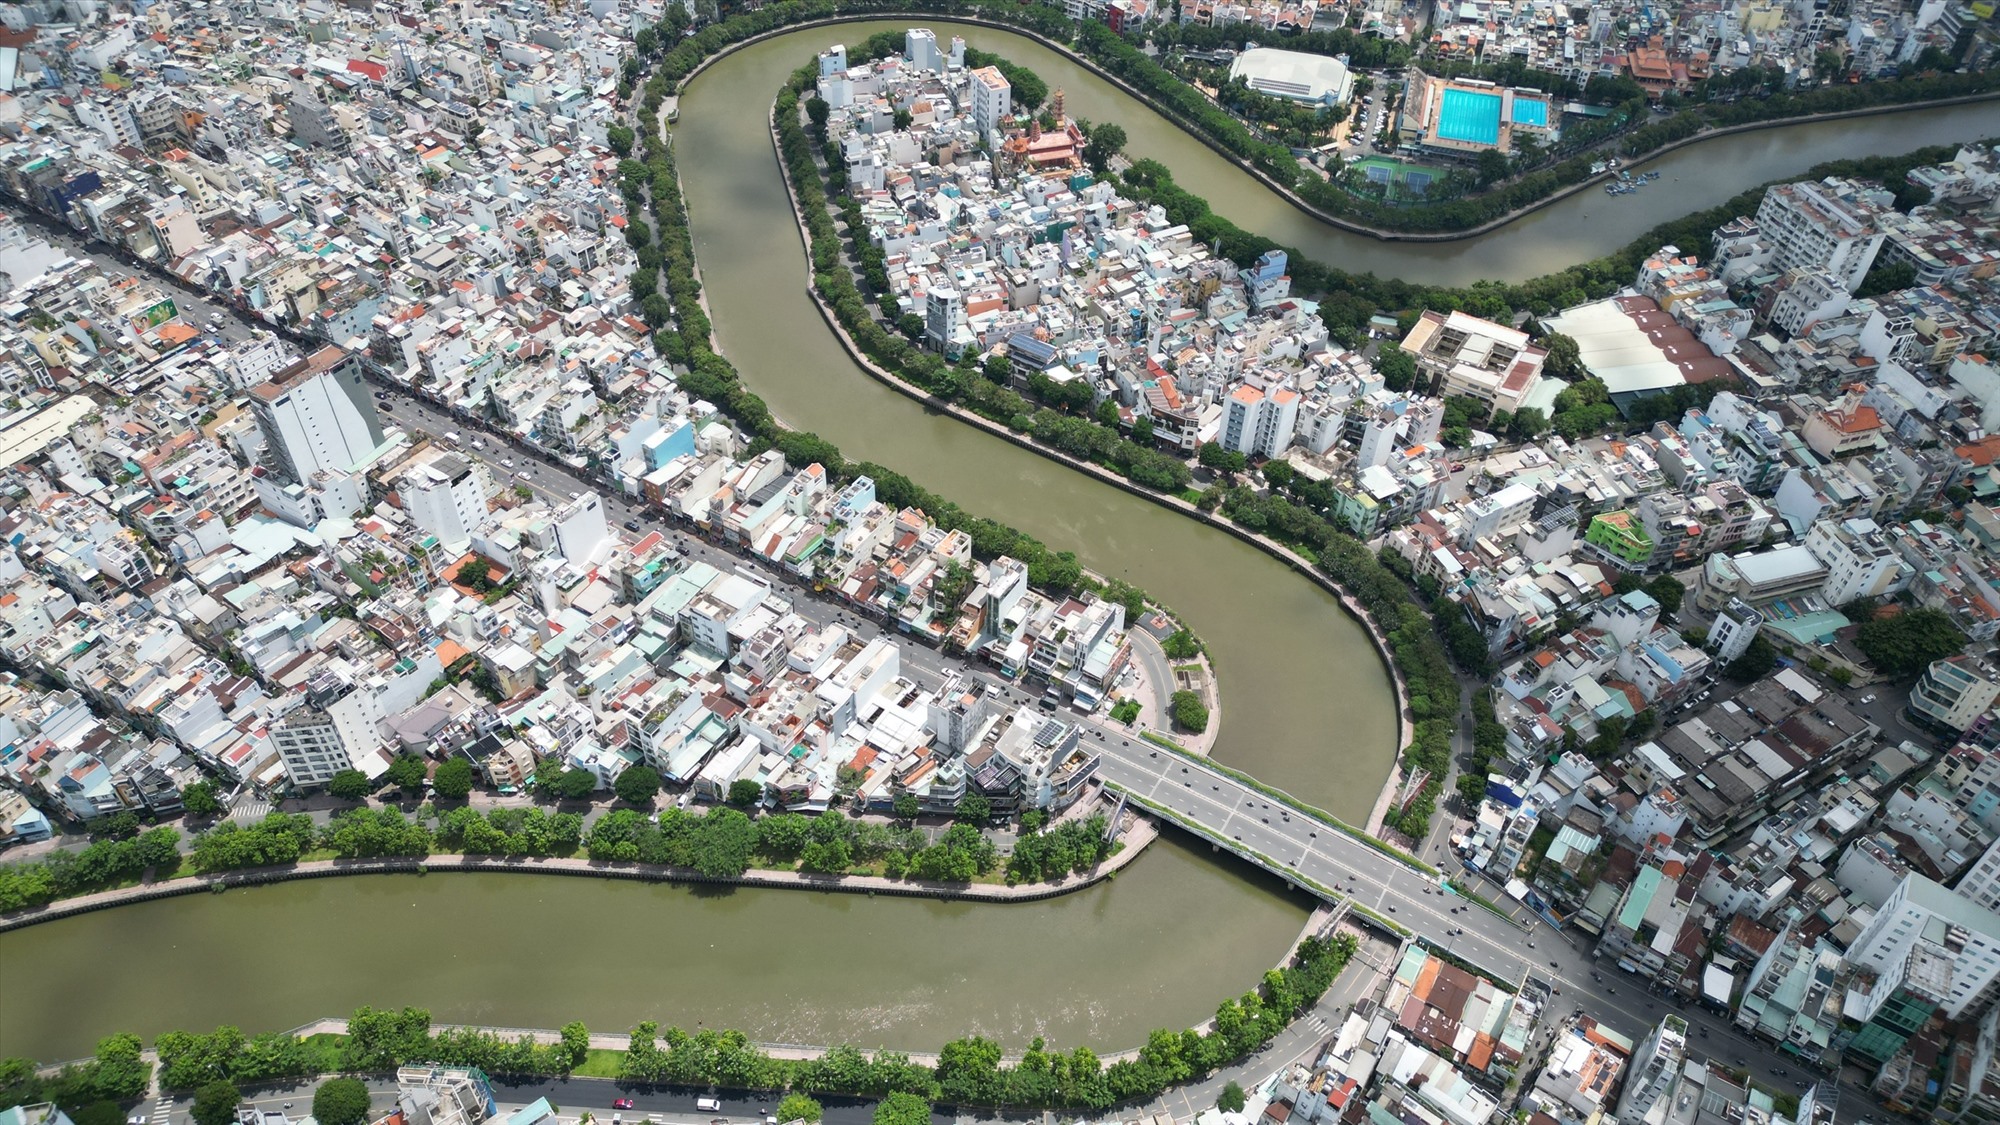 Đoạn kênh uốn lượn qua khu cầu Kiệu (quận Phú Nhuận) với dòng nước trong xanh, hai bên đường cây thẳng tắp. Trong dự án cải tạo, có 16 cây cầu dọc tuyến kênh được sửa chữa, xây mới.